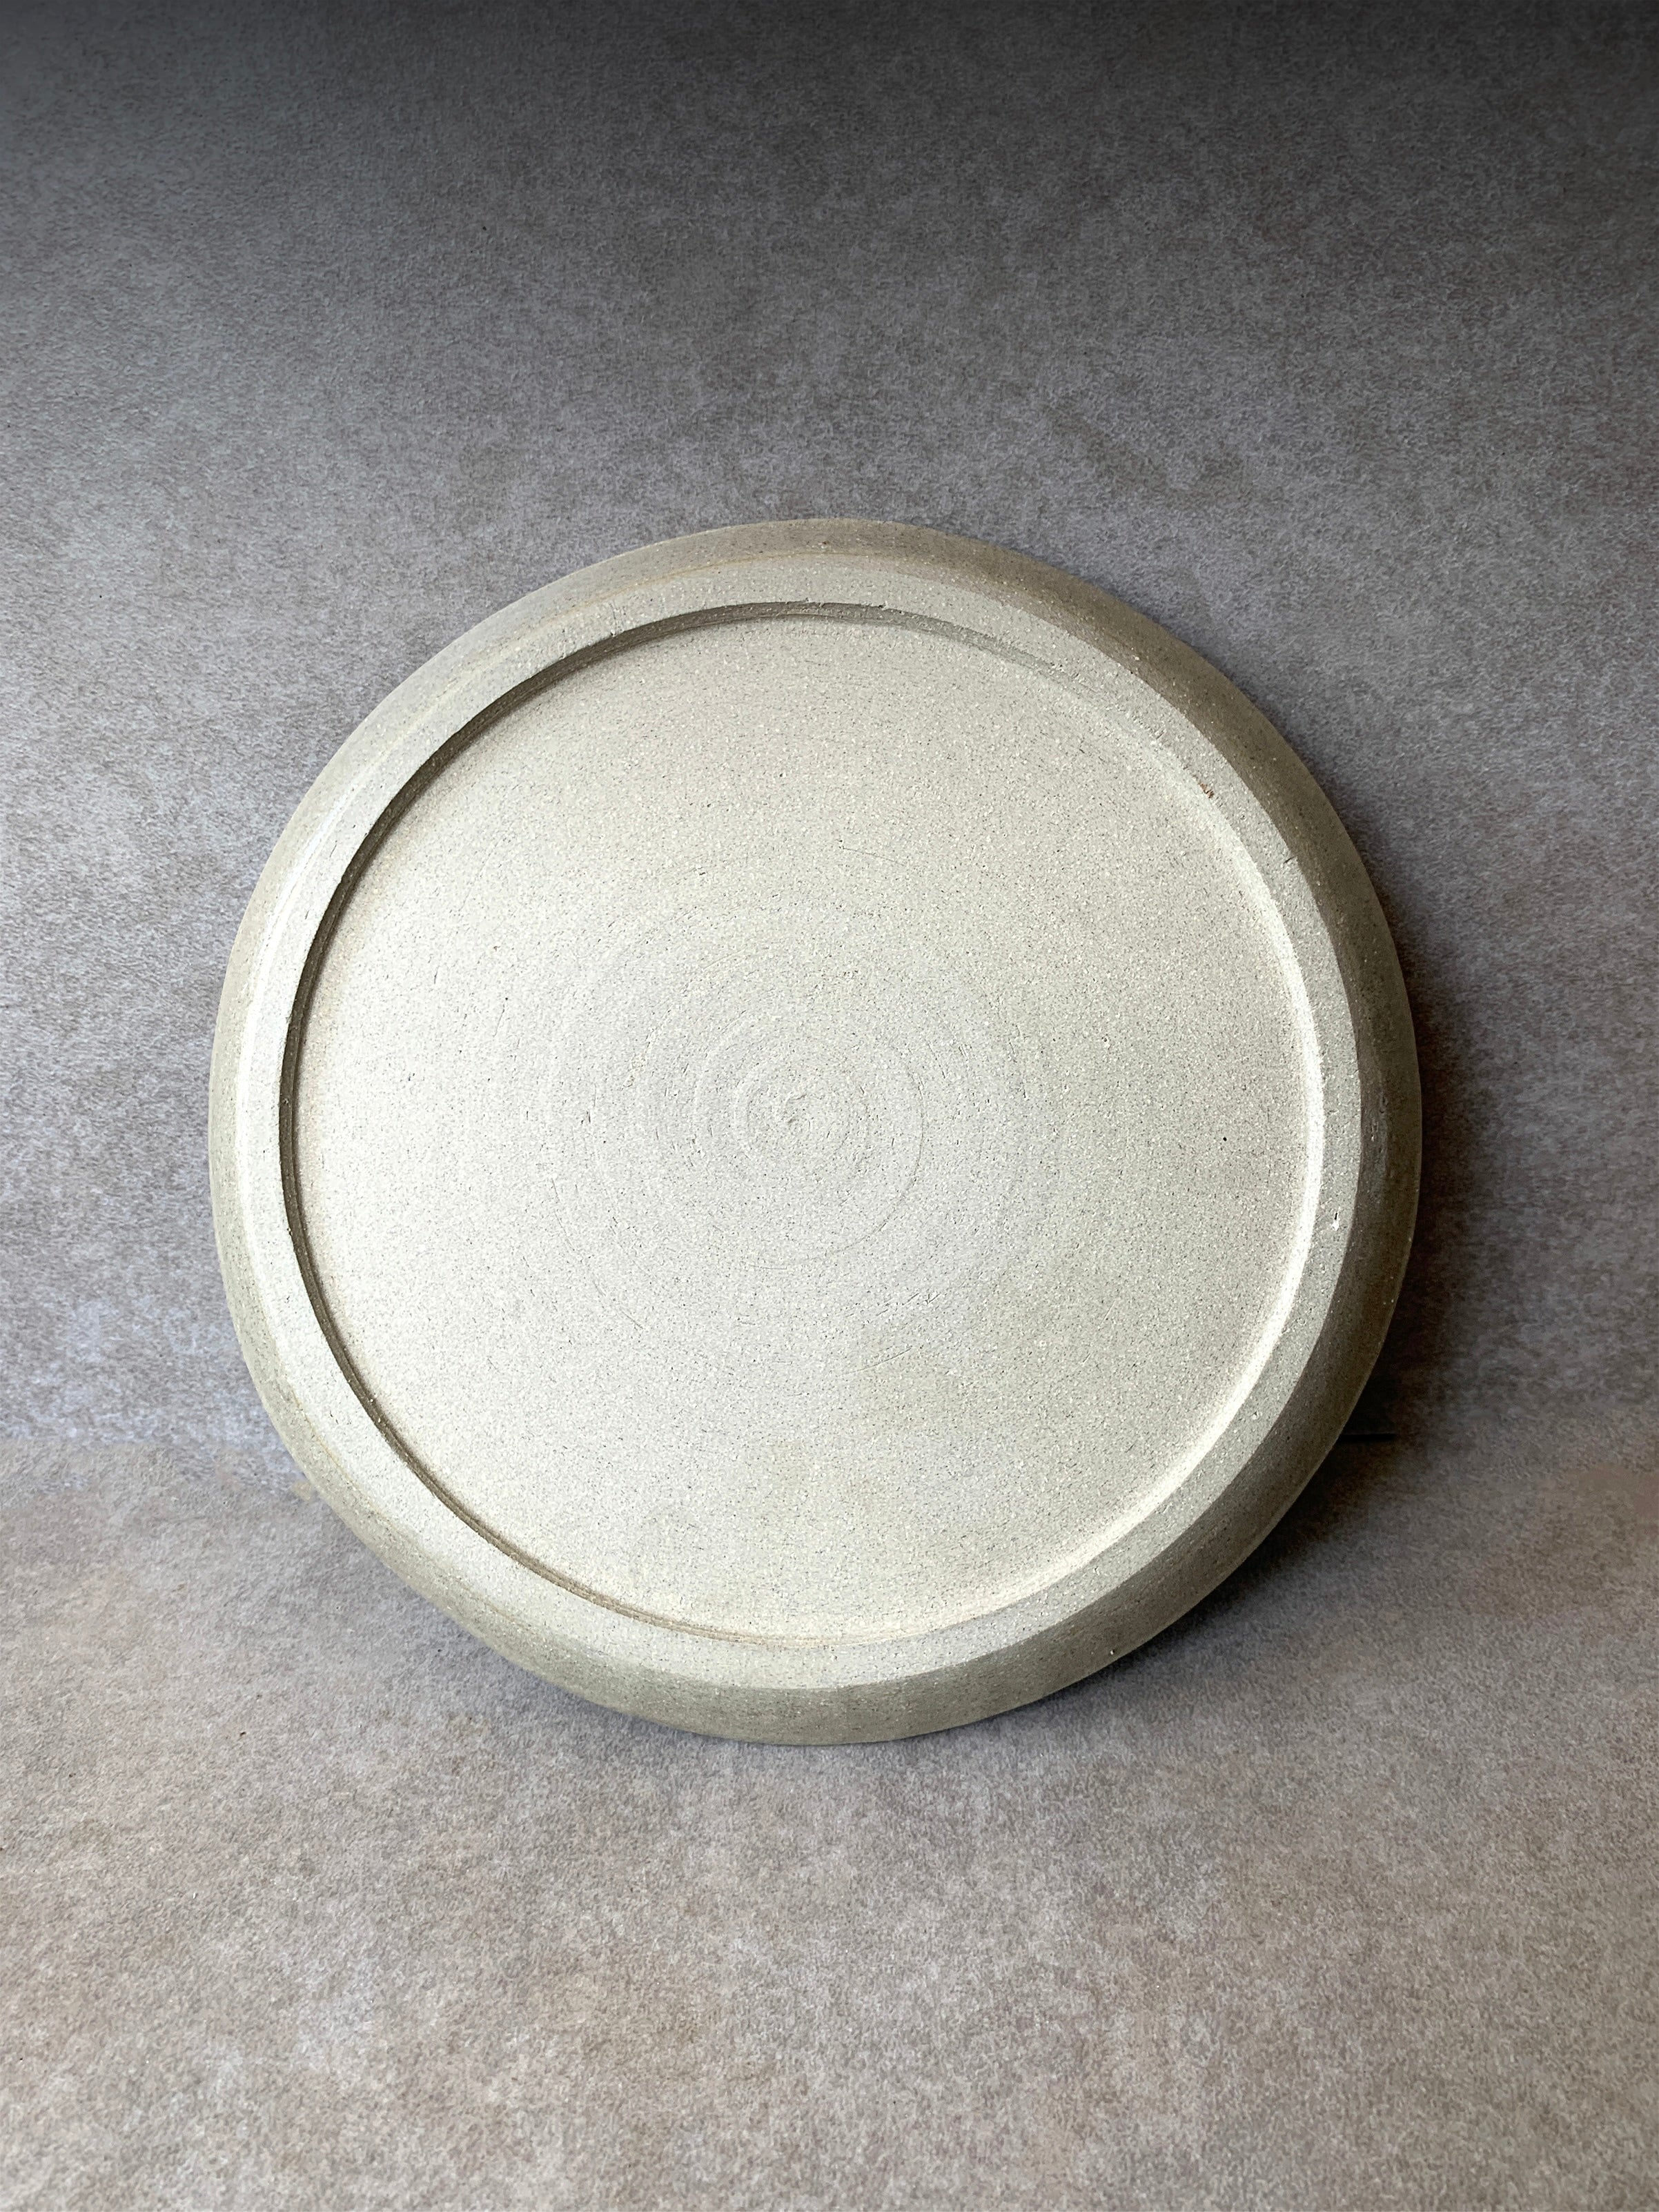 Medium Flame Plate - 21cm diameter